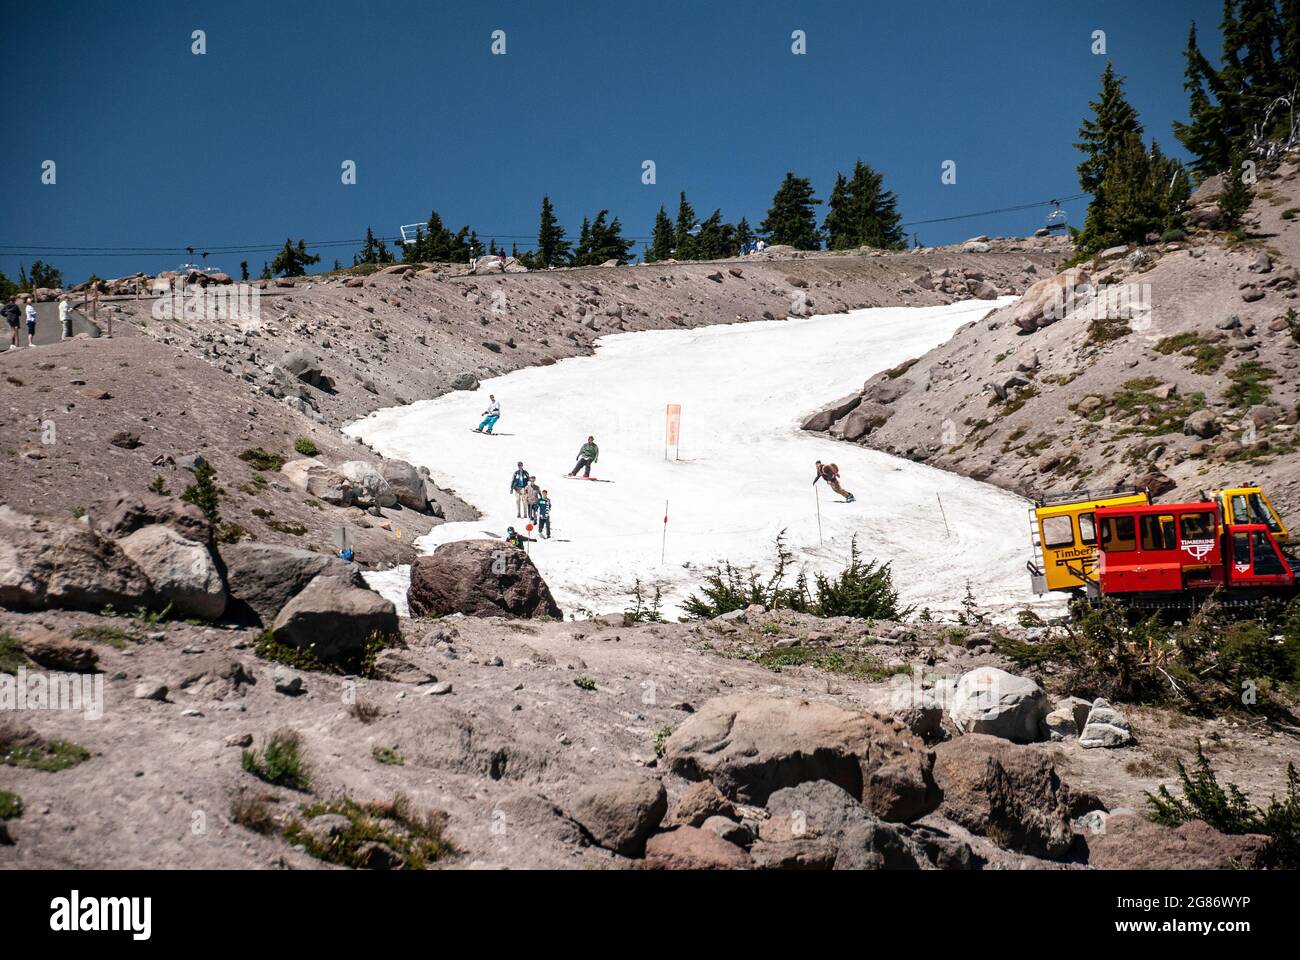 Snow skiers on Mt Hood, Oregon Stock Photo